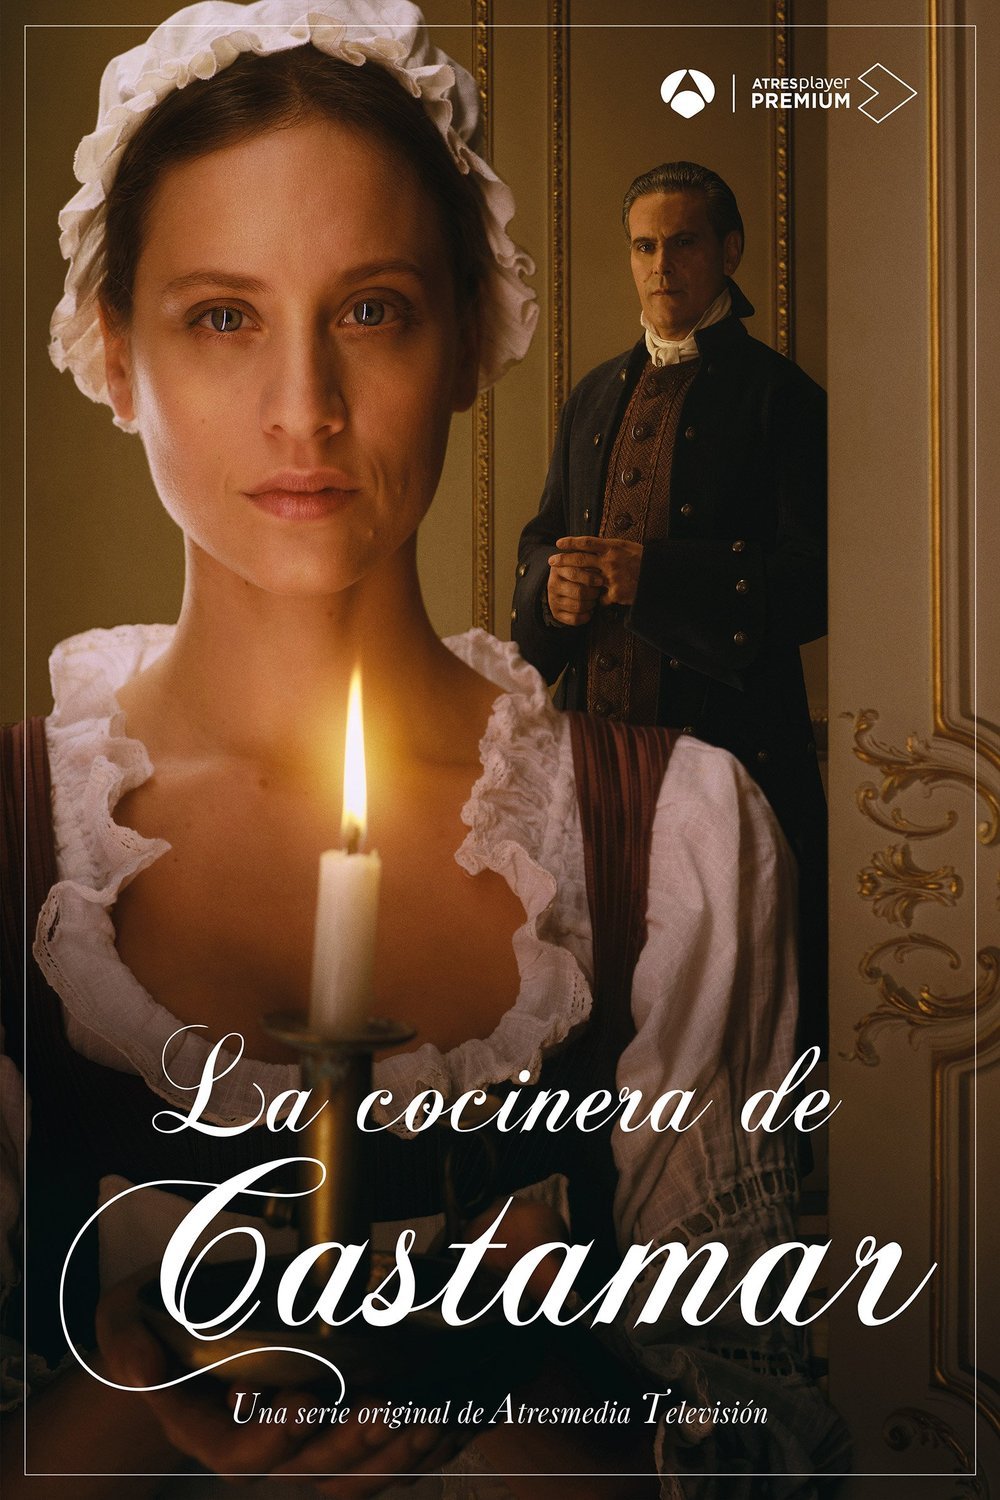 Spanish poster of the movie La cocinera de Castamar